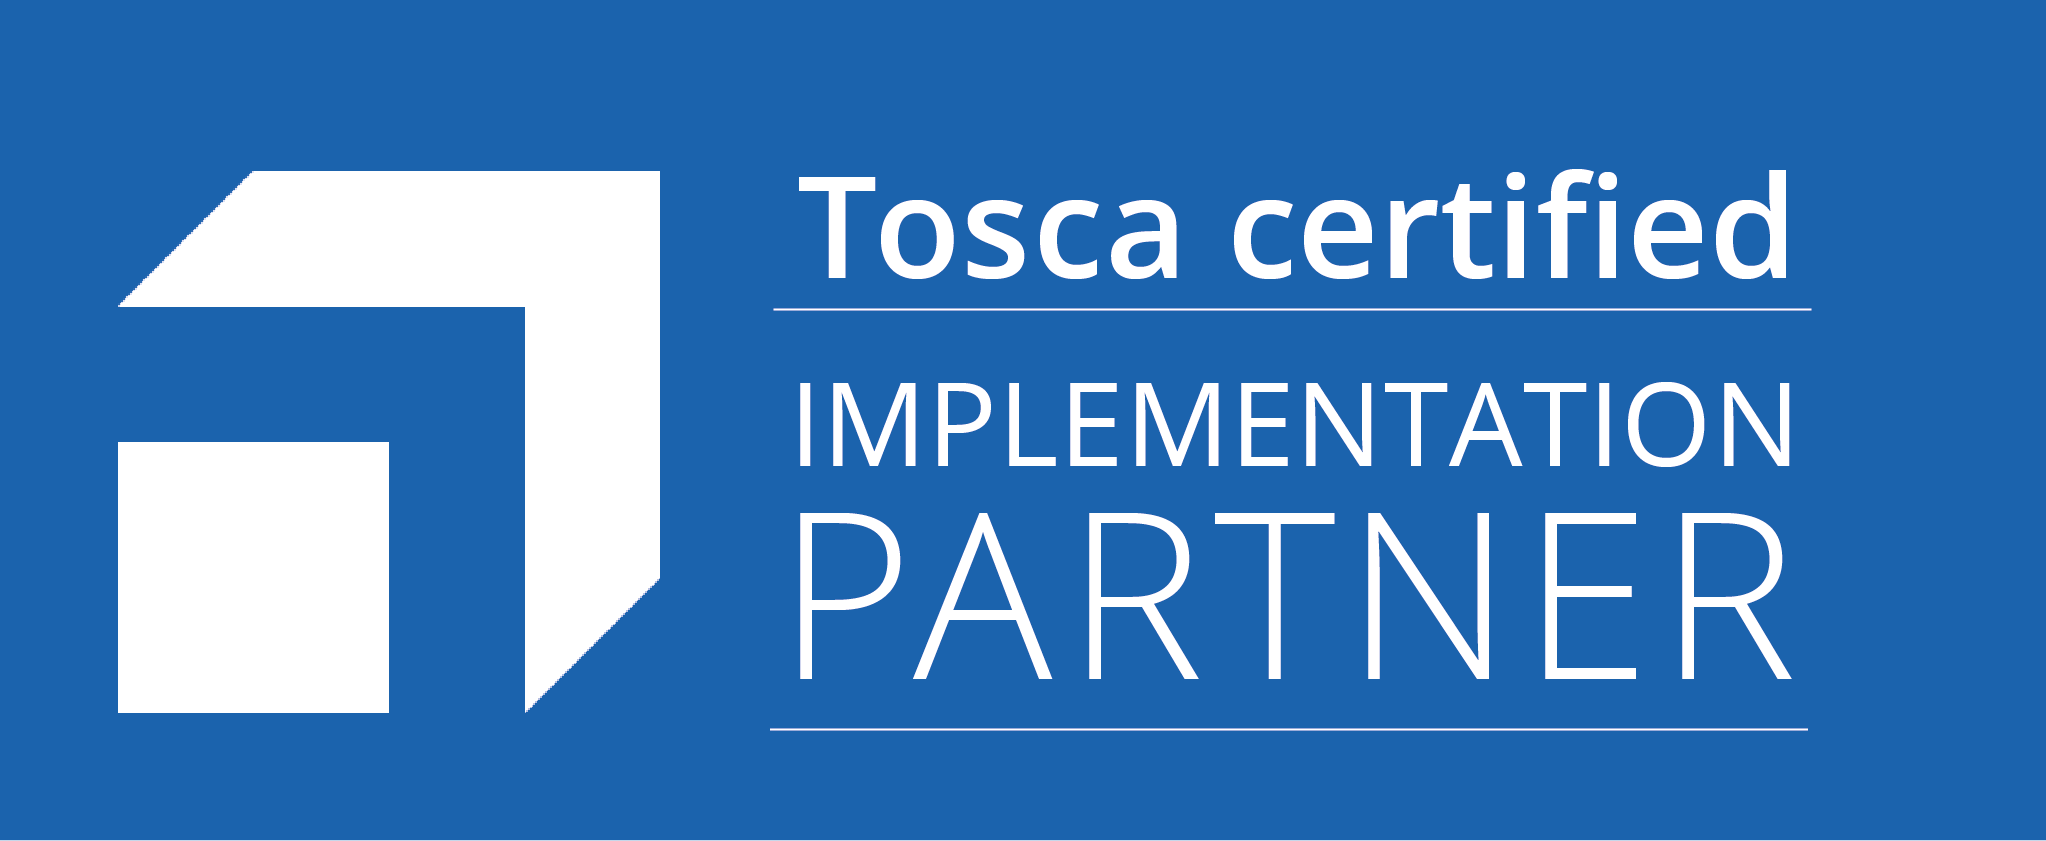 Tosca_certified_implementation_partner_Logo-blue.png